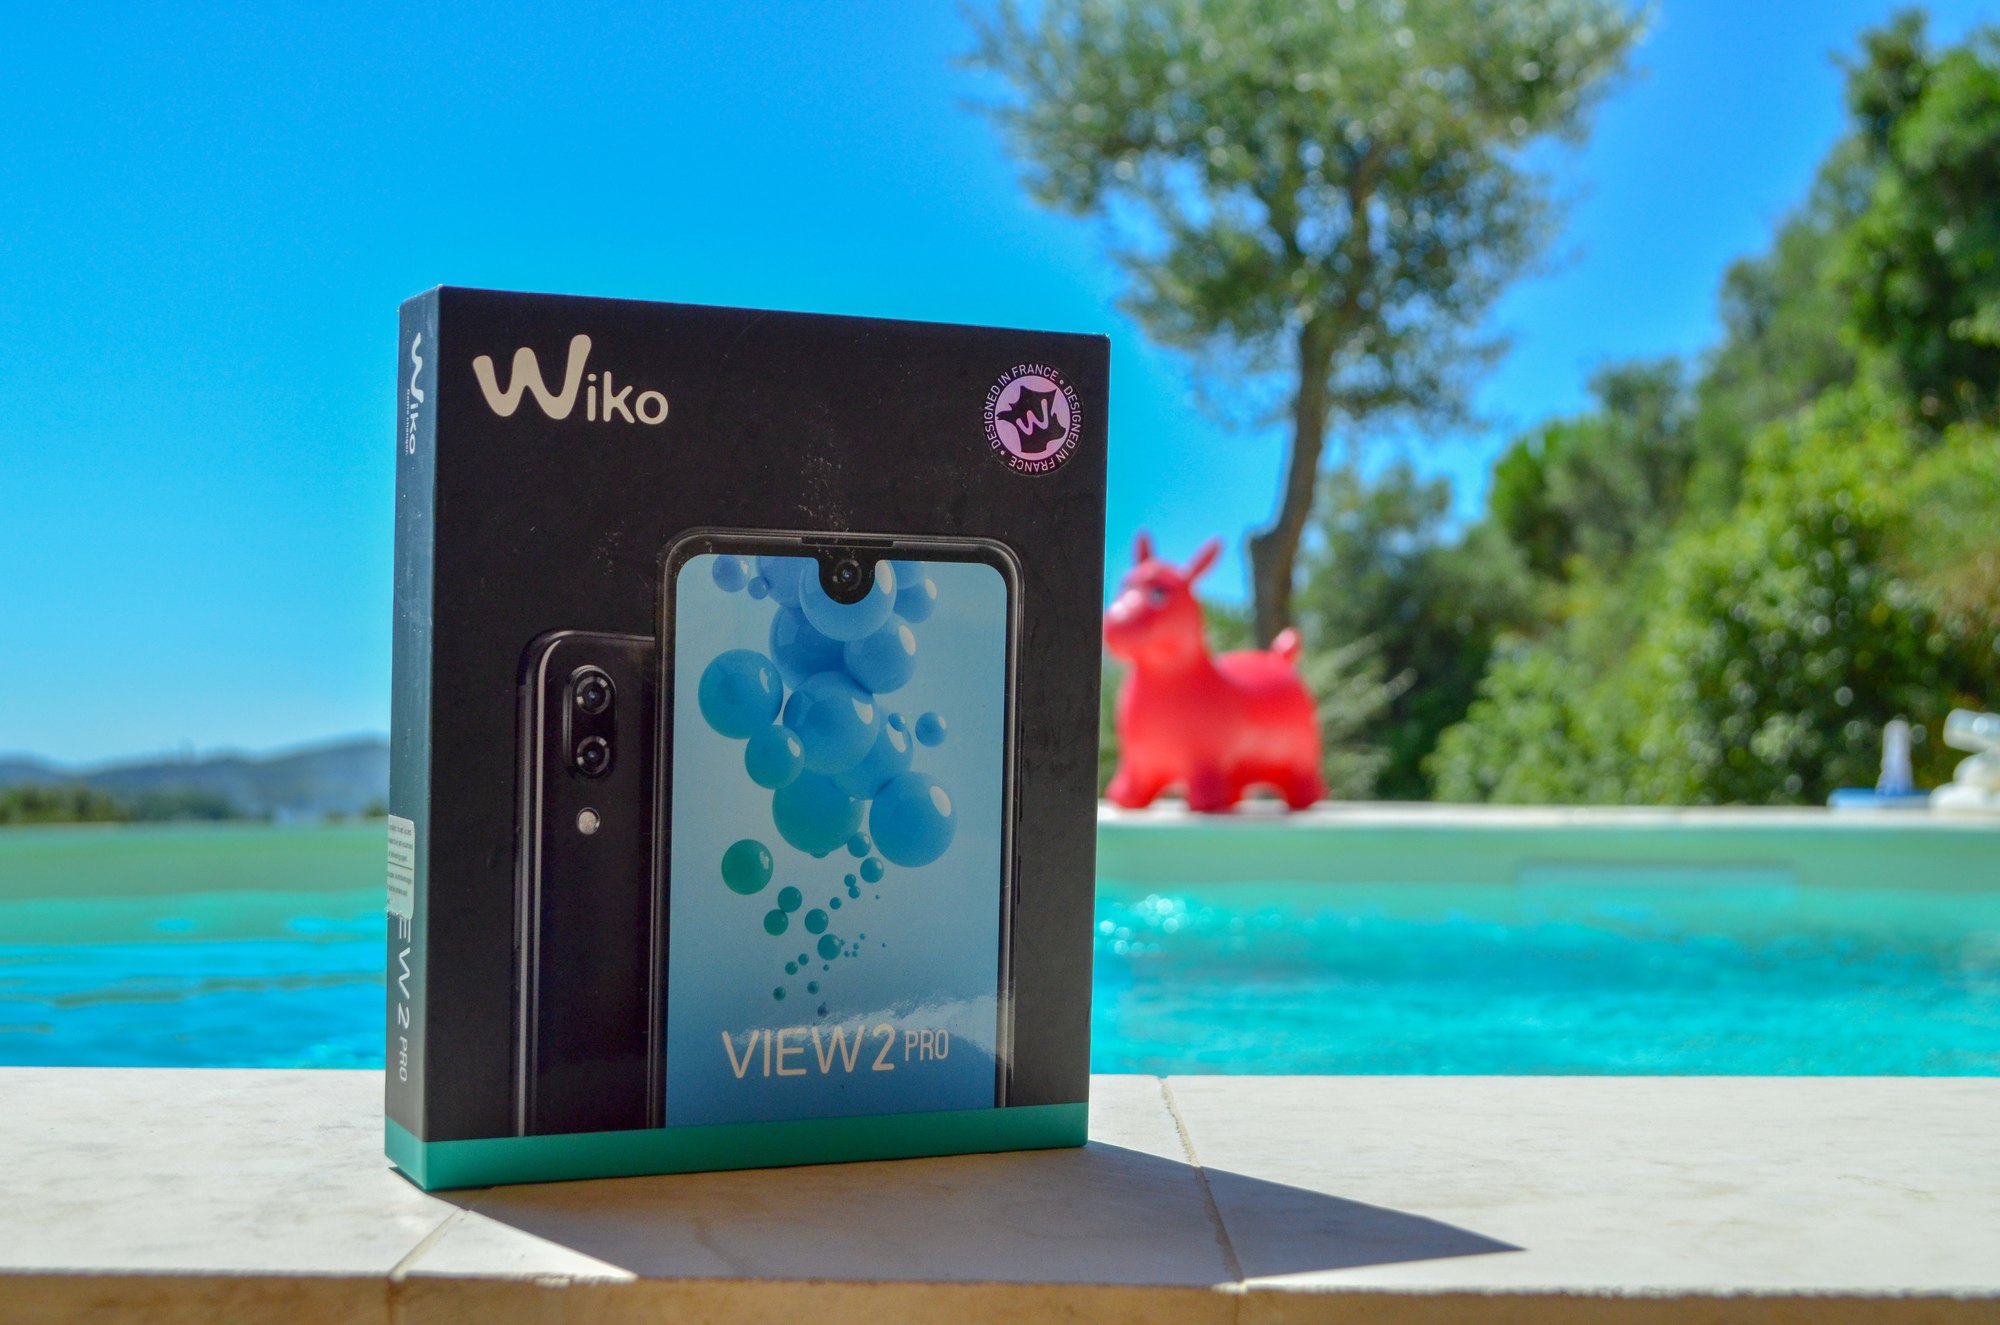 Wiko View 2 Pro DSC 0551 Test – Wiko View 2 Pro : Un smartphone pour améliorer son image Android